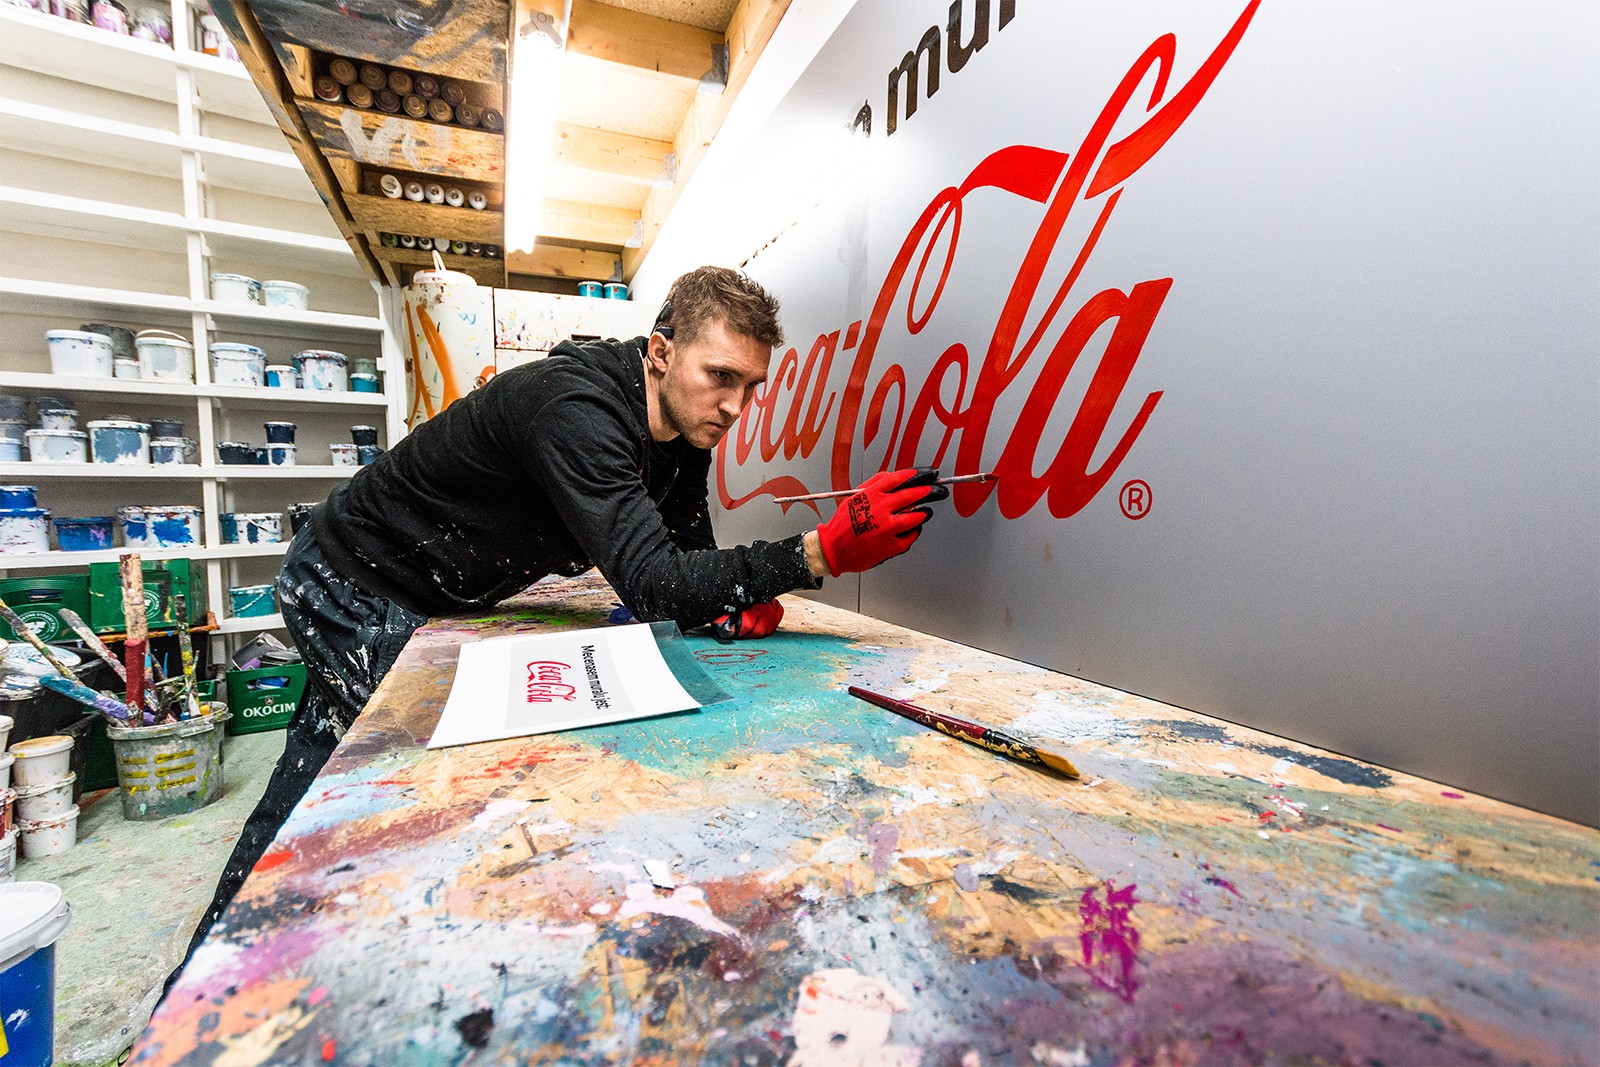 Mural reklamowy dla marki Coca Cola | Ikona powraca | Portfolio